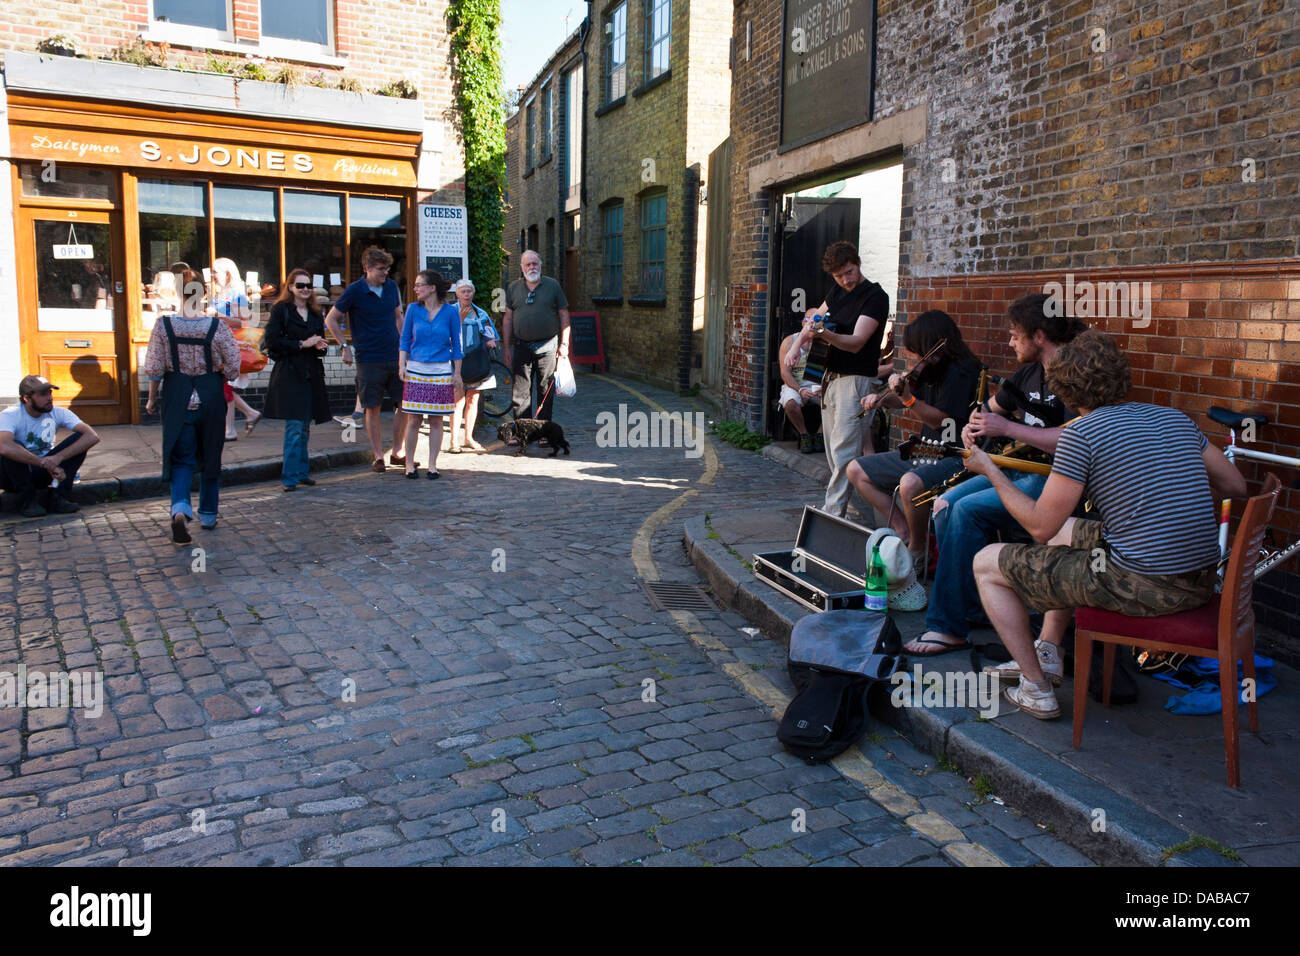 Une bande de jeunes musiciens ambulants pour effectuer dans les rues de Londres à Columbia Road Flower Market, London, England, GB, au Royaume-Uni. Banque D'Images